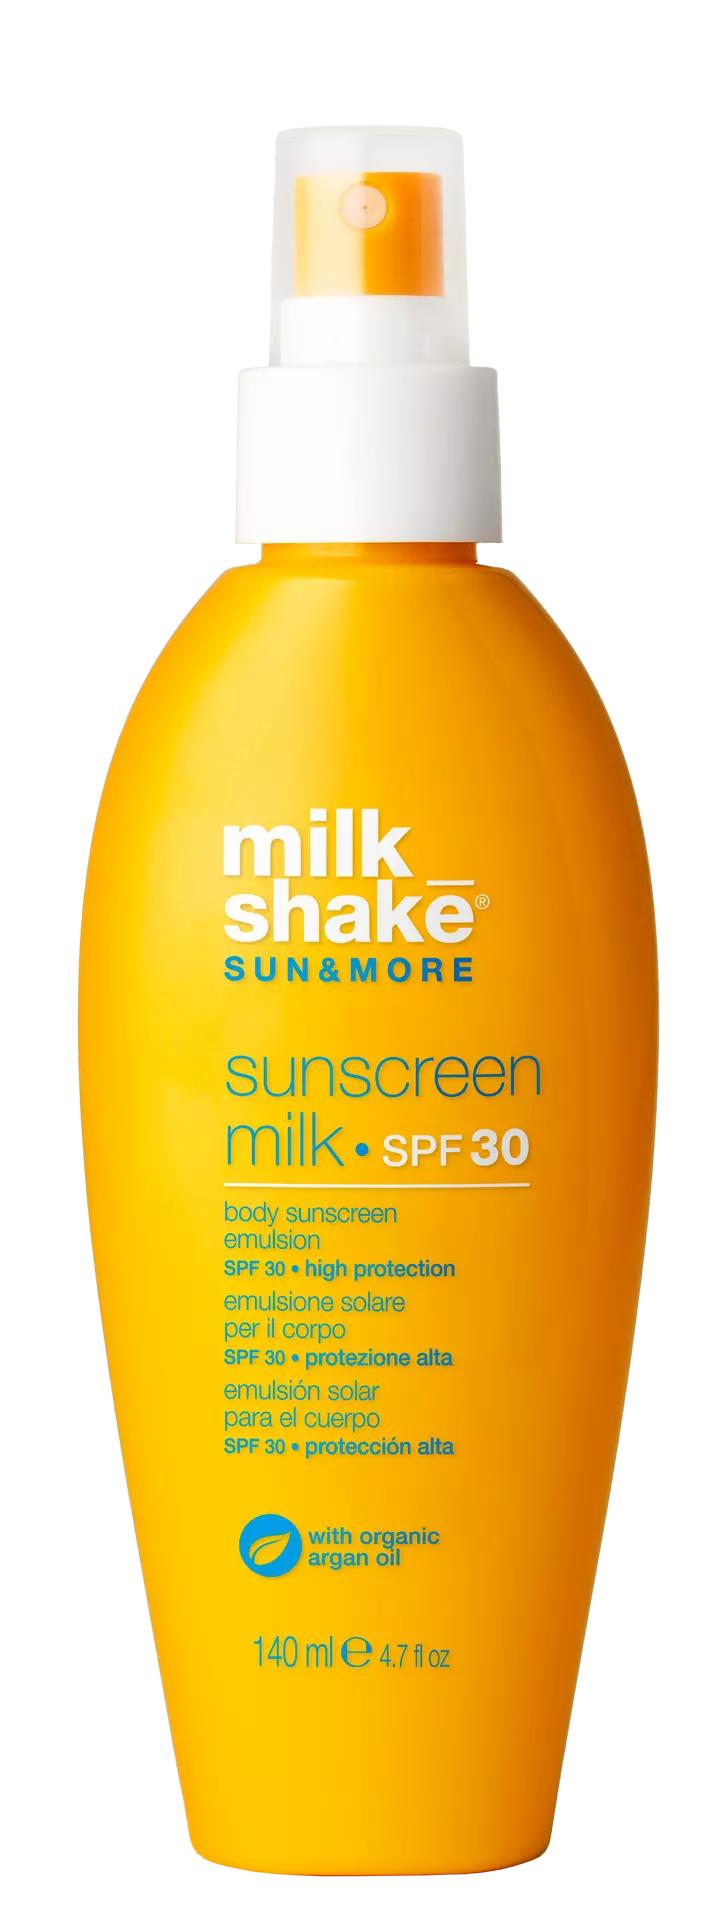 Milkshake Sunmore Sunscreen Milk Spf Ml